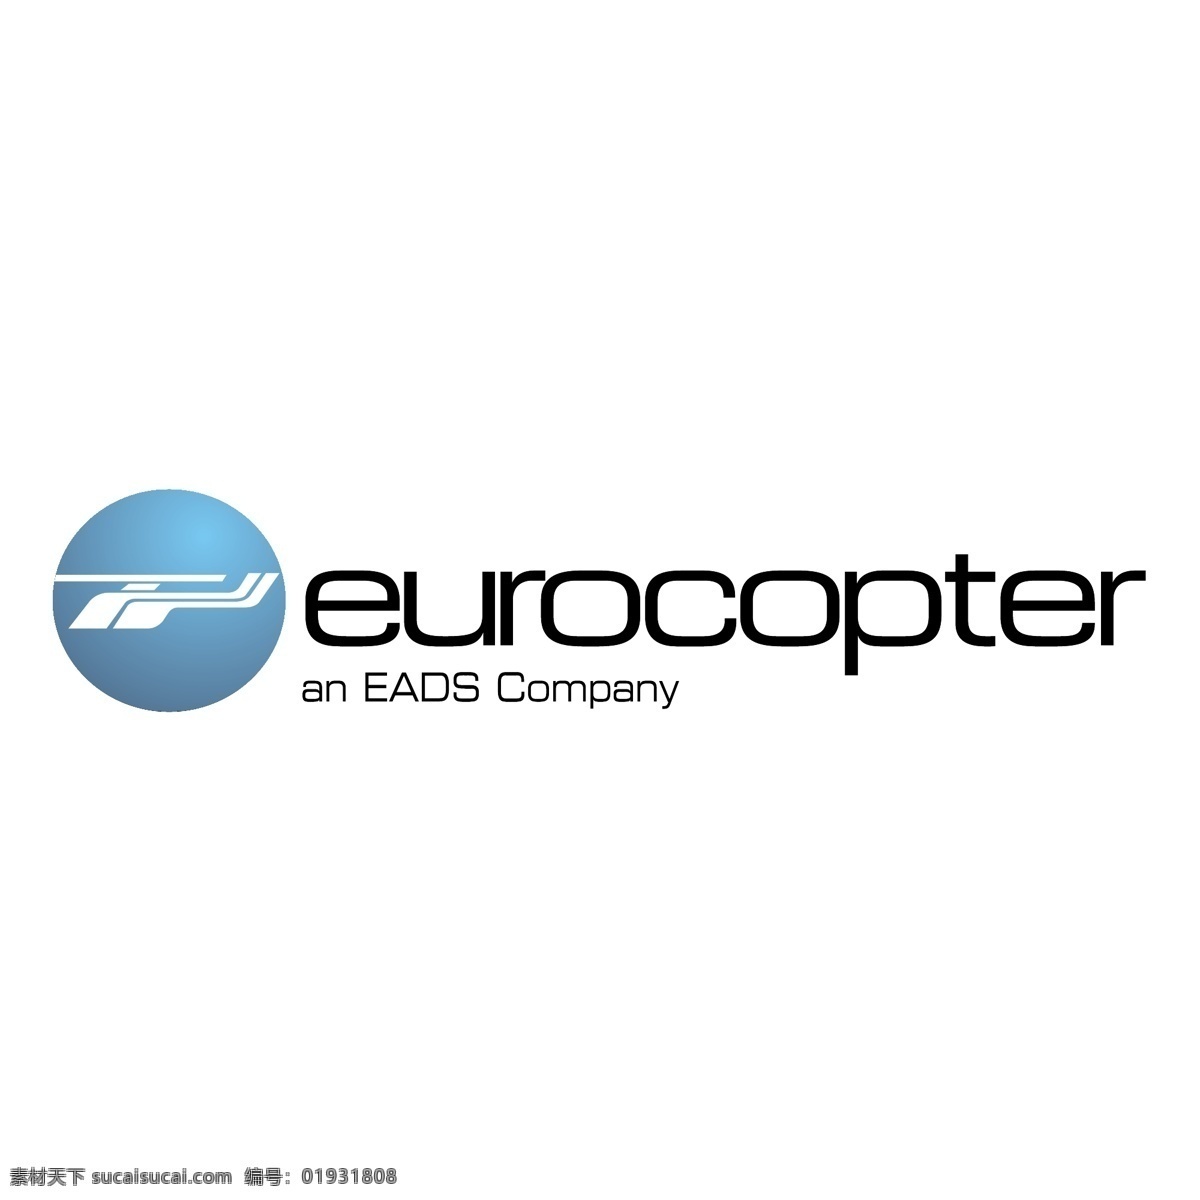 欧洲 直升机 公司 logo 矢量 eurocopter 标志 eps向量 矢量图 建筑家居